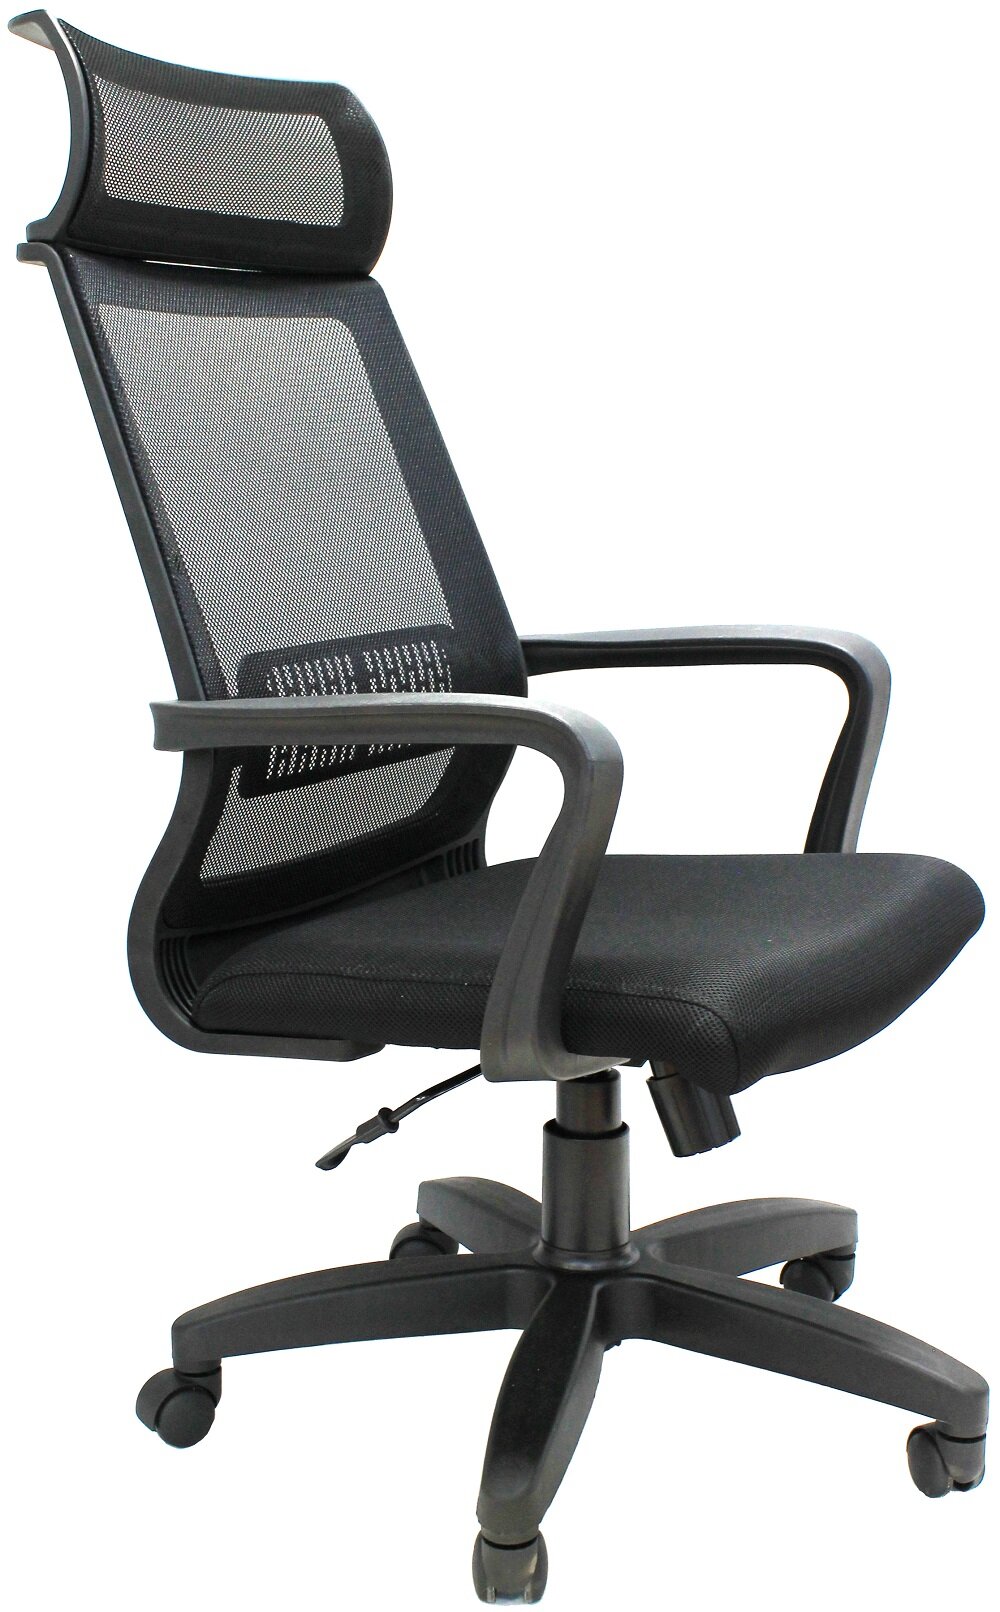 Компьютерное кресло Евростиль Оптима Люкс офисное, обивка: ткань/сетка, цвет: черный